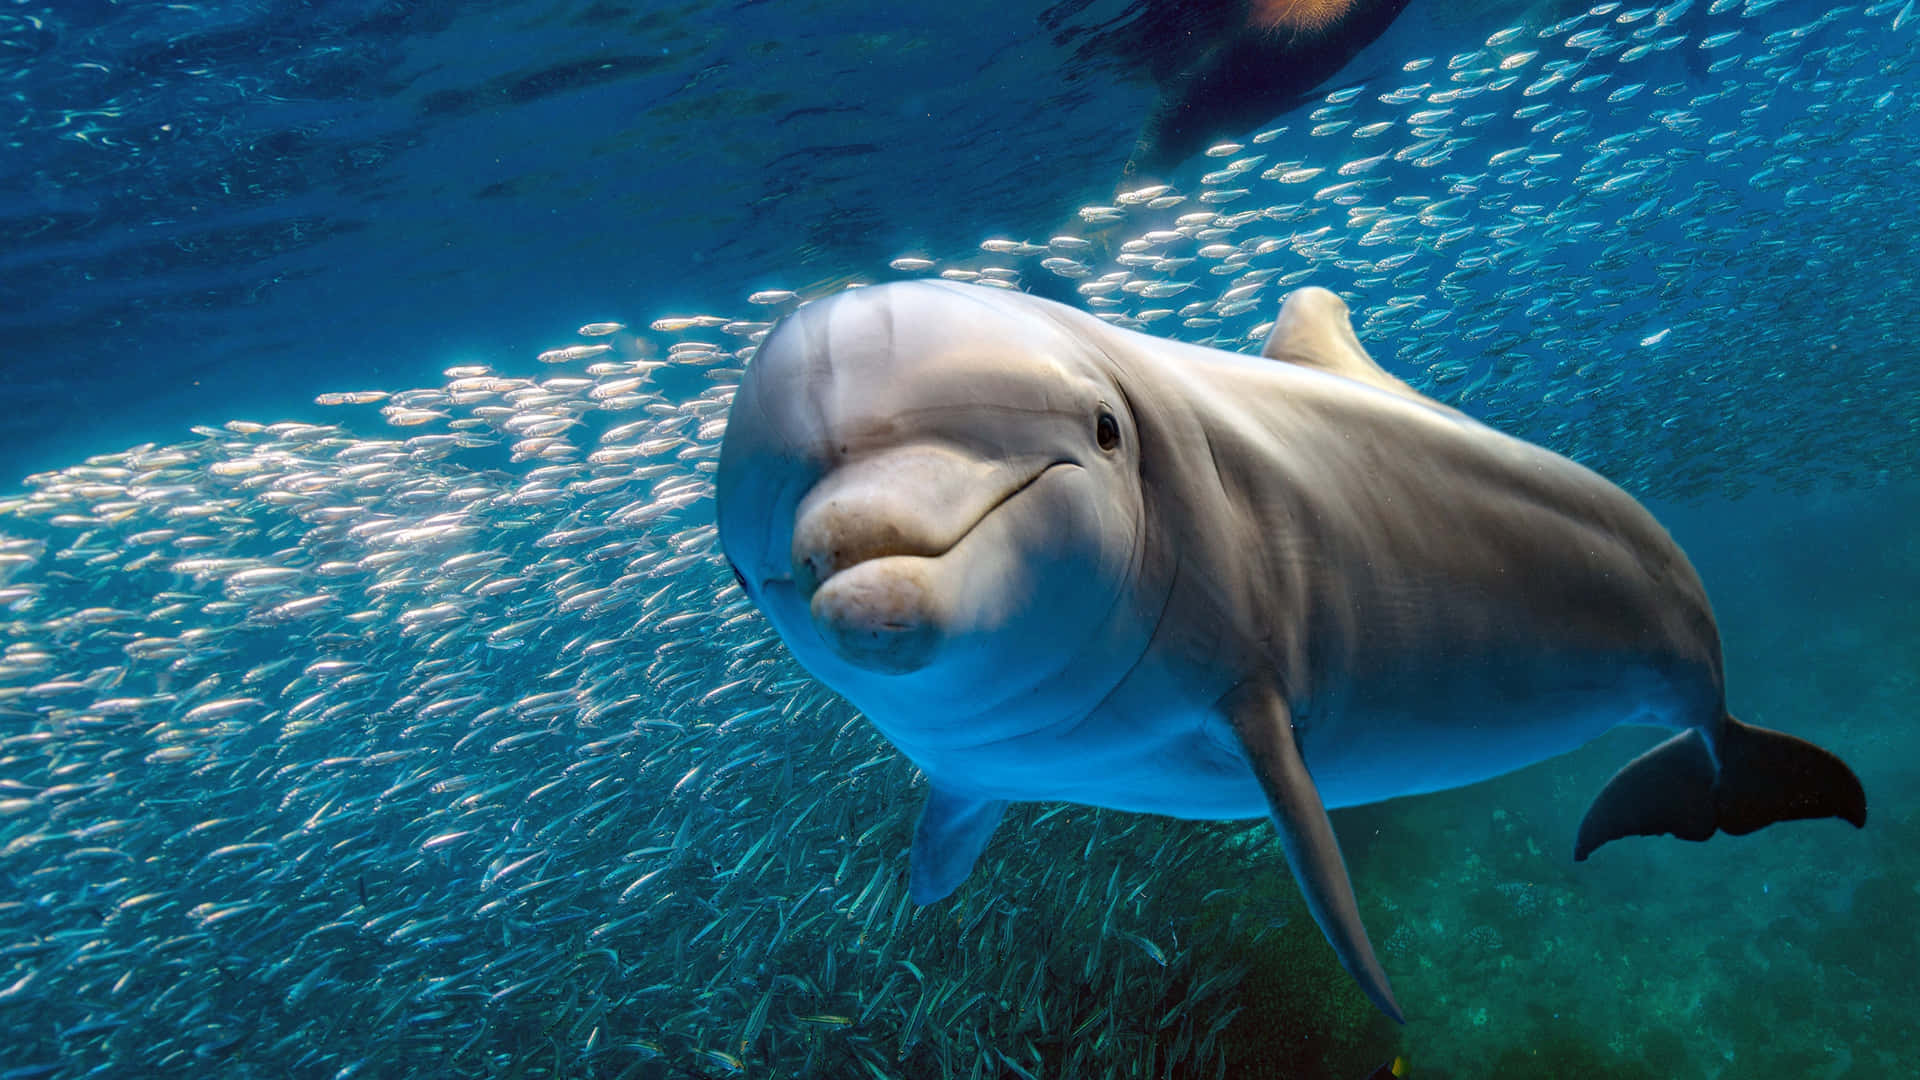 Machensie Sich Bereit, Die Wunderschöne Unterwasserwelt Mit Diesem Neugierigen Delfin Zu Erkunden.